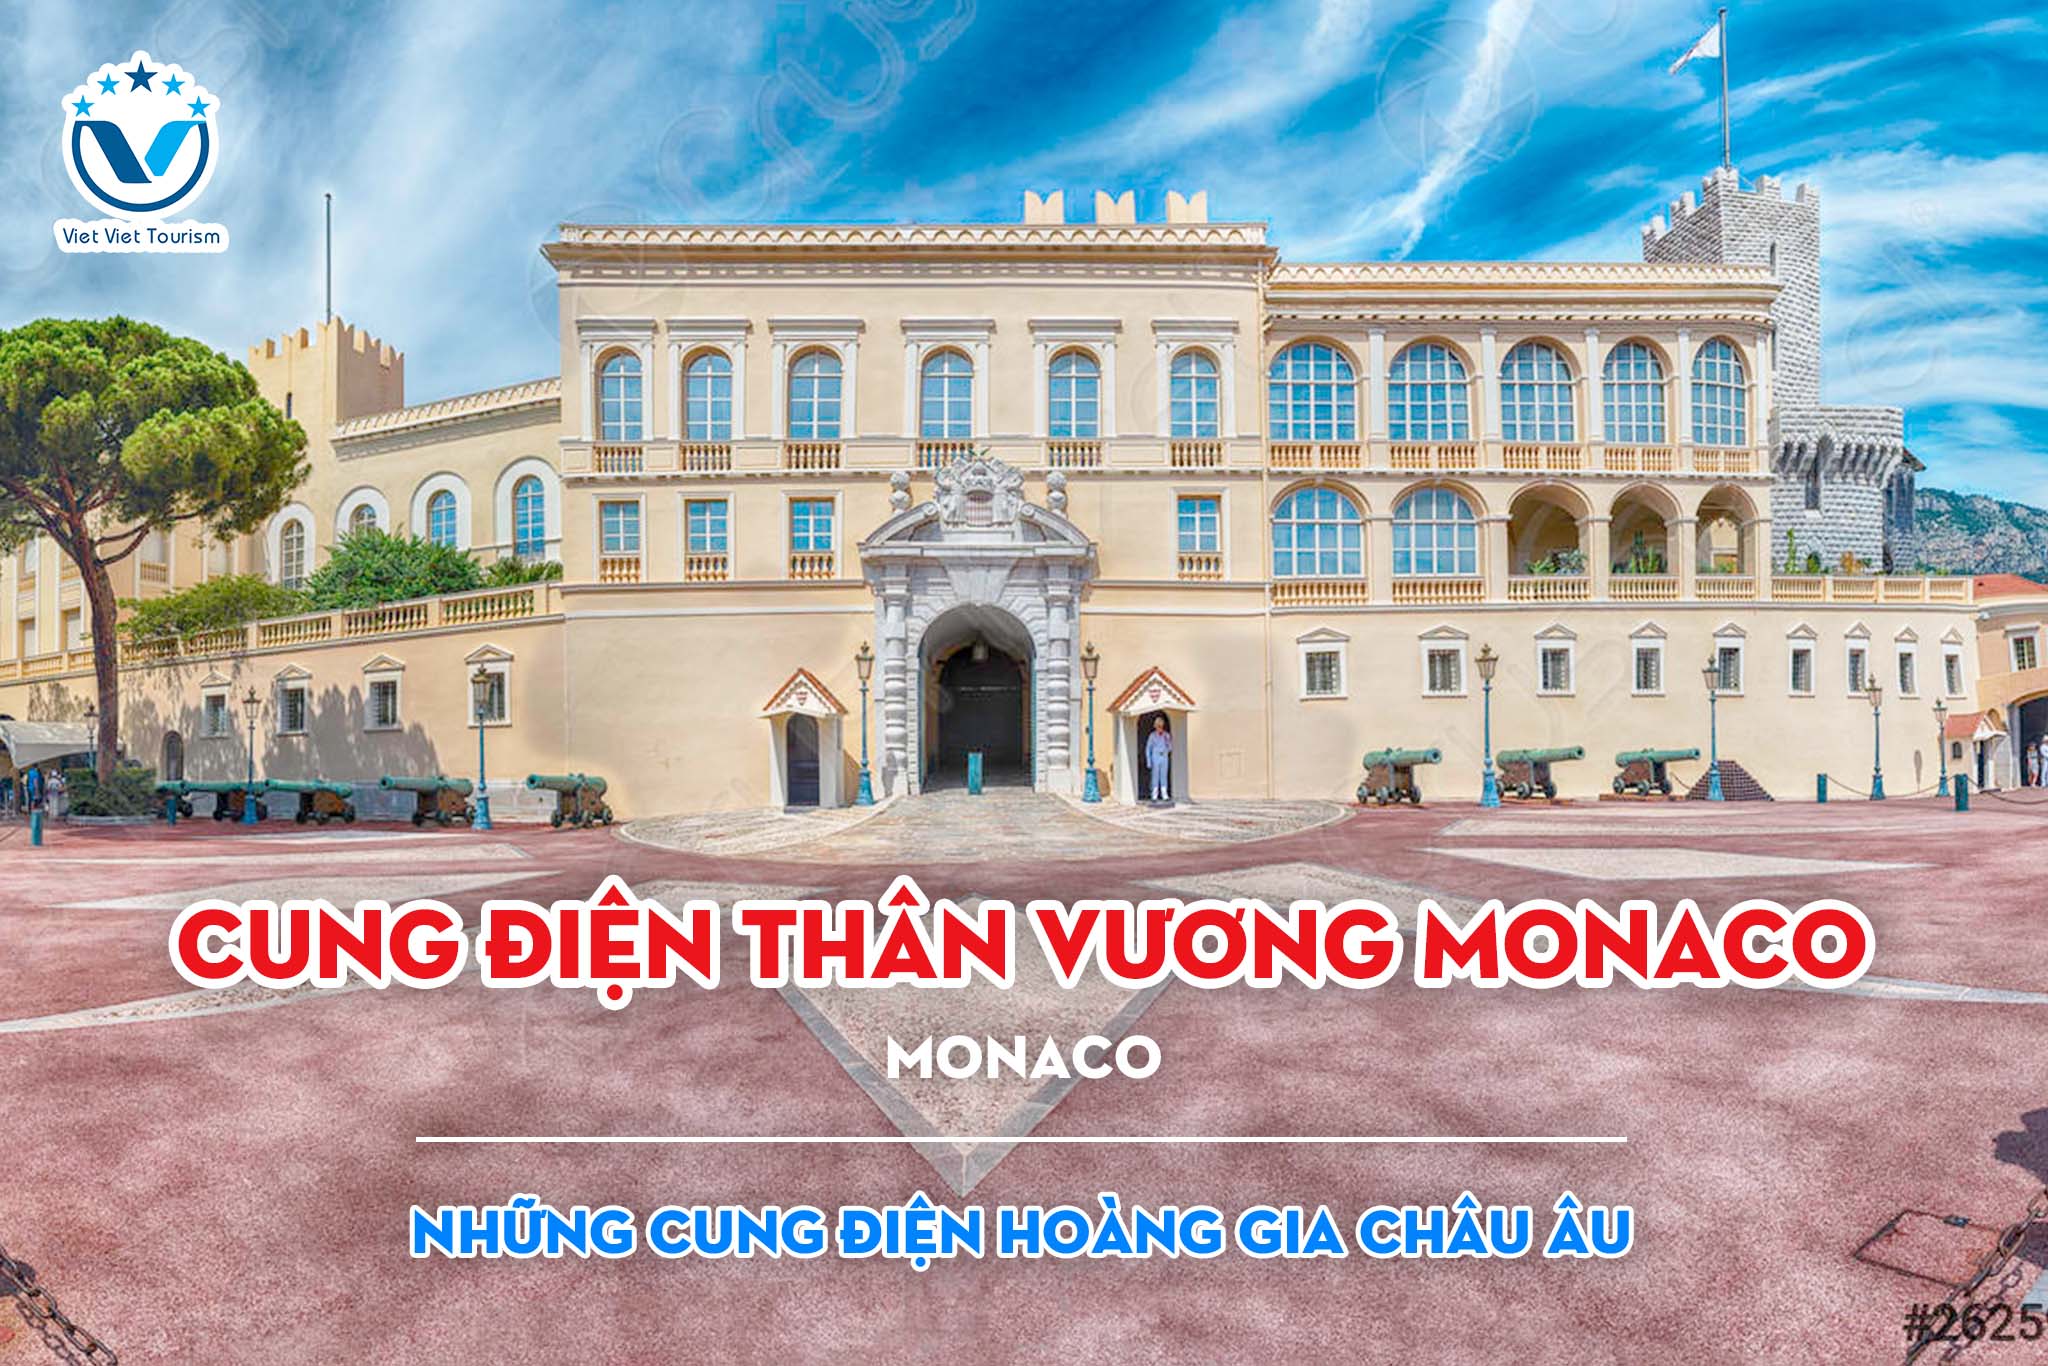 Royal Palace VVT 9. Cung điện Thân vương Monaco